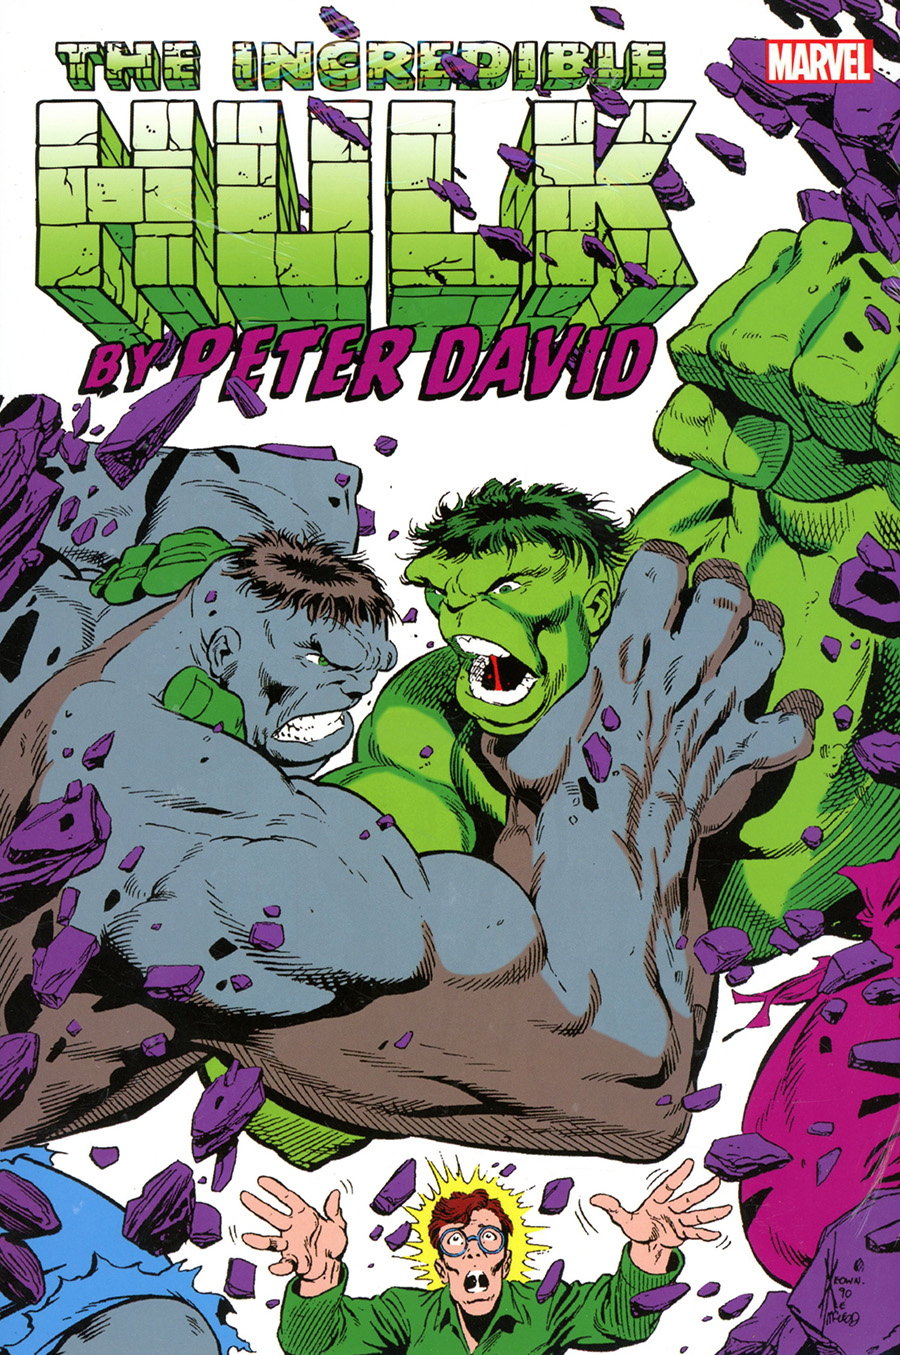 Incredible Hulk By Peter David Omnibus Vol 2 HC Book Market Dale Keown Hulk vs Hulk Cover